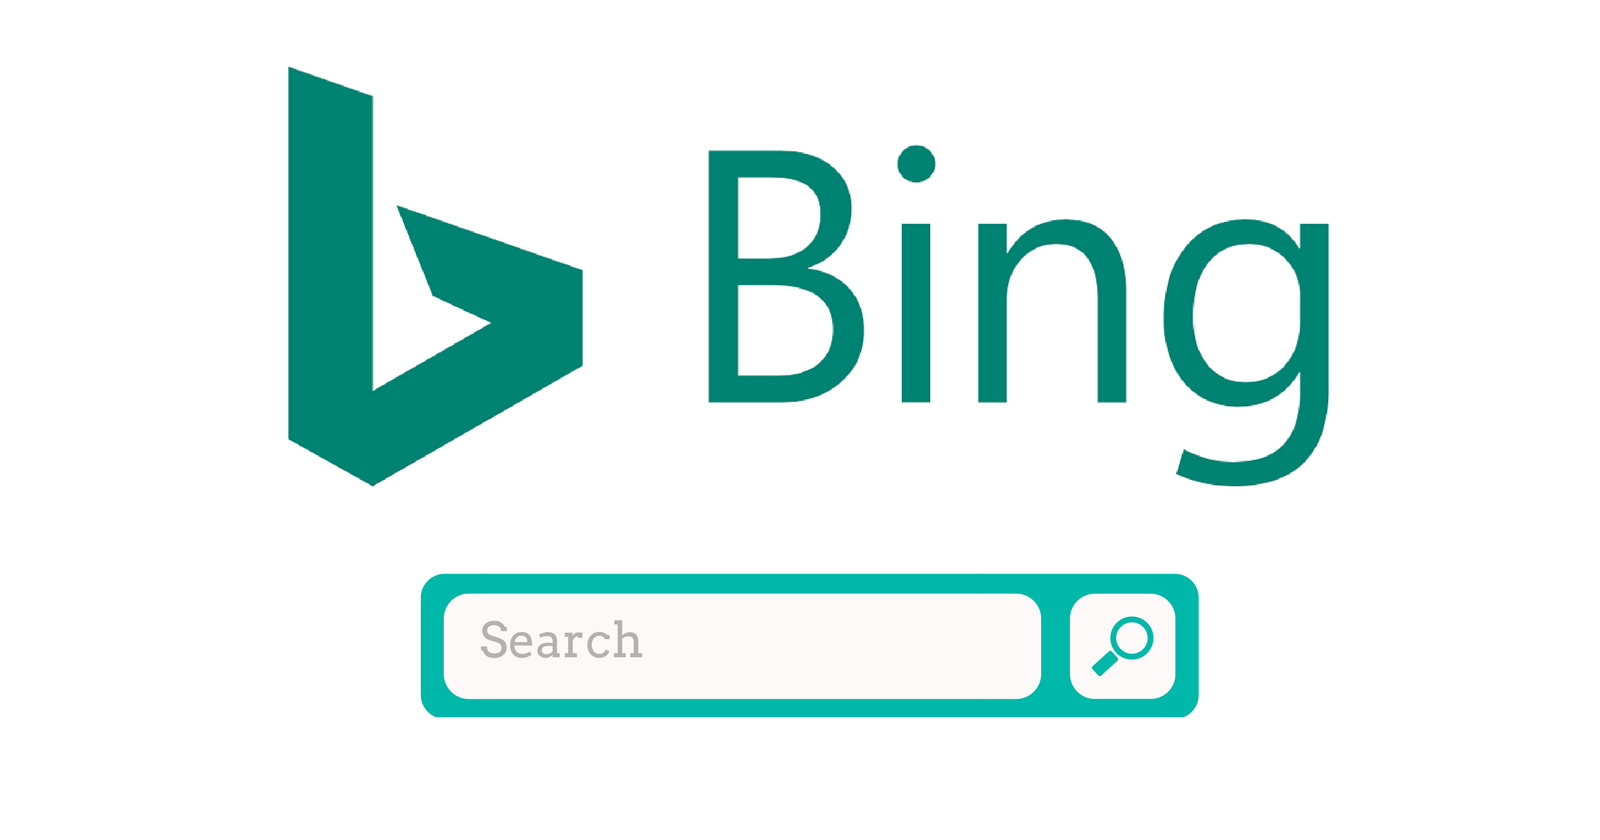 Bing,محركات البحث العالمية,أشهر محركات البحث,من أشهر محركات البحث,اشهر محركات البحث